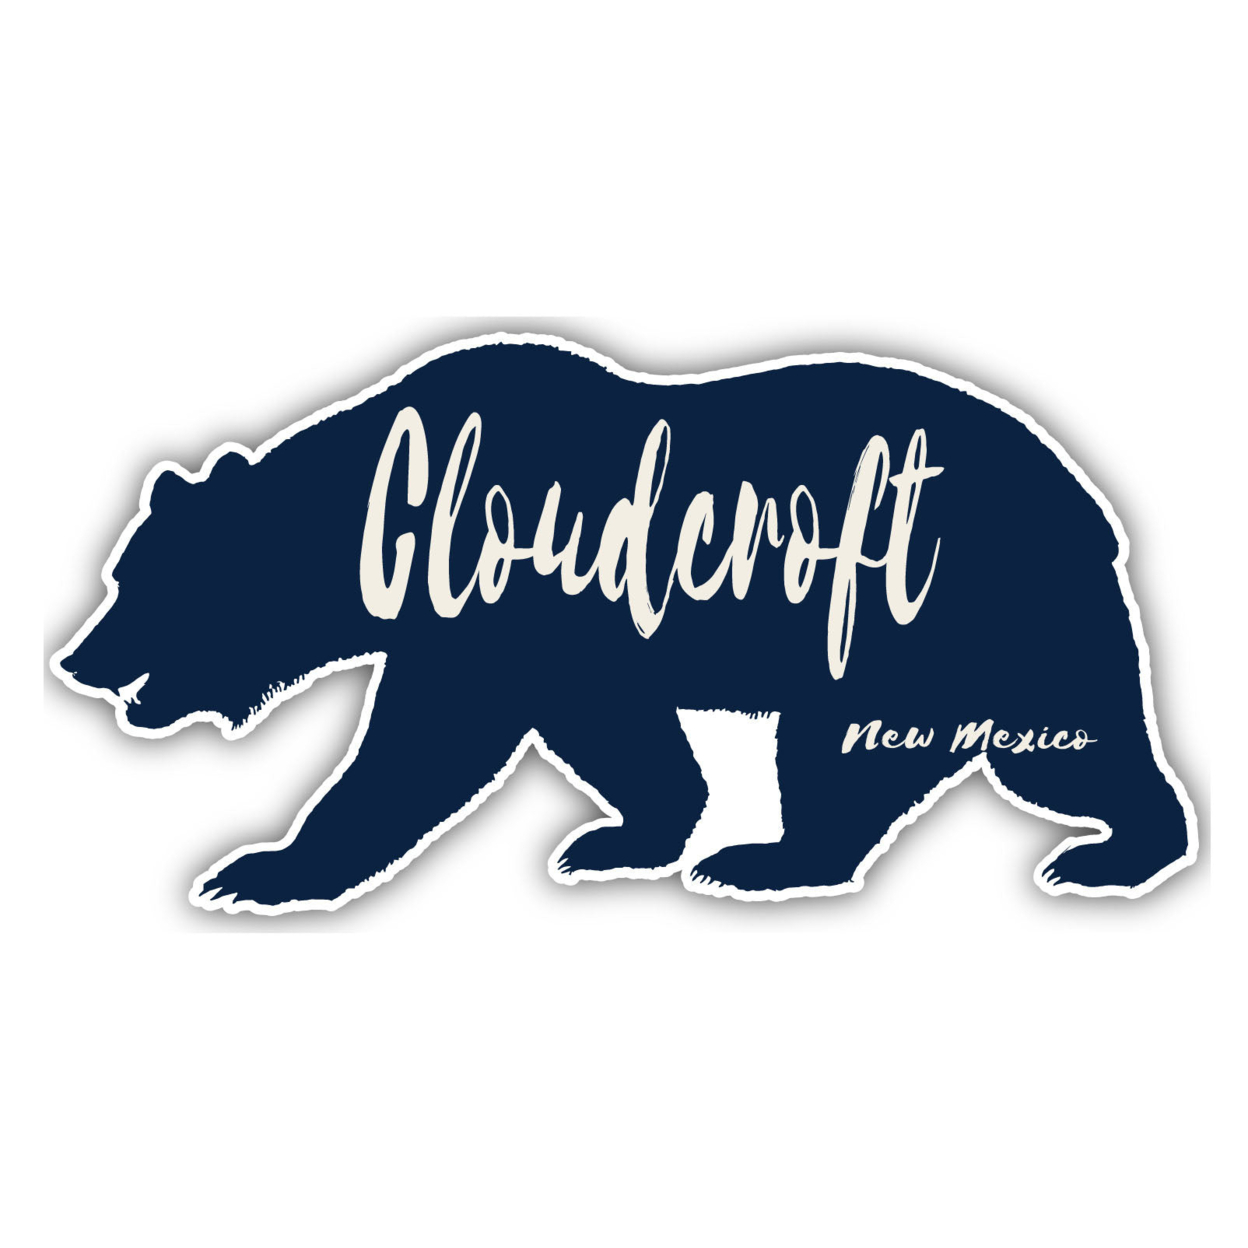 Cloudcroft New Mexico Souvenir Decorative Stickers (Choose Theme And Size) - Single Unit, 6-Inch, Bear